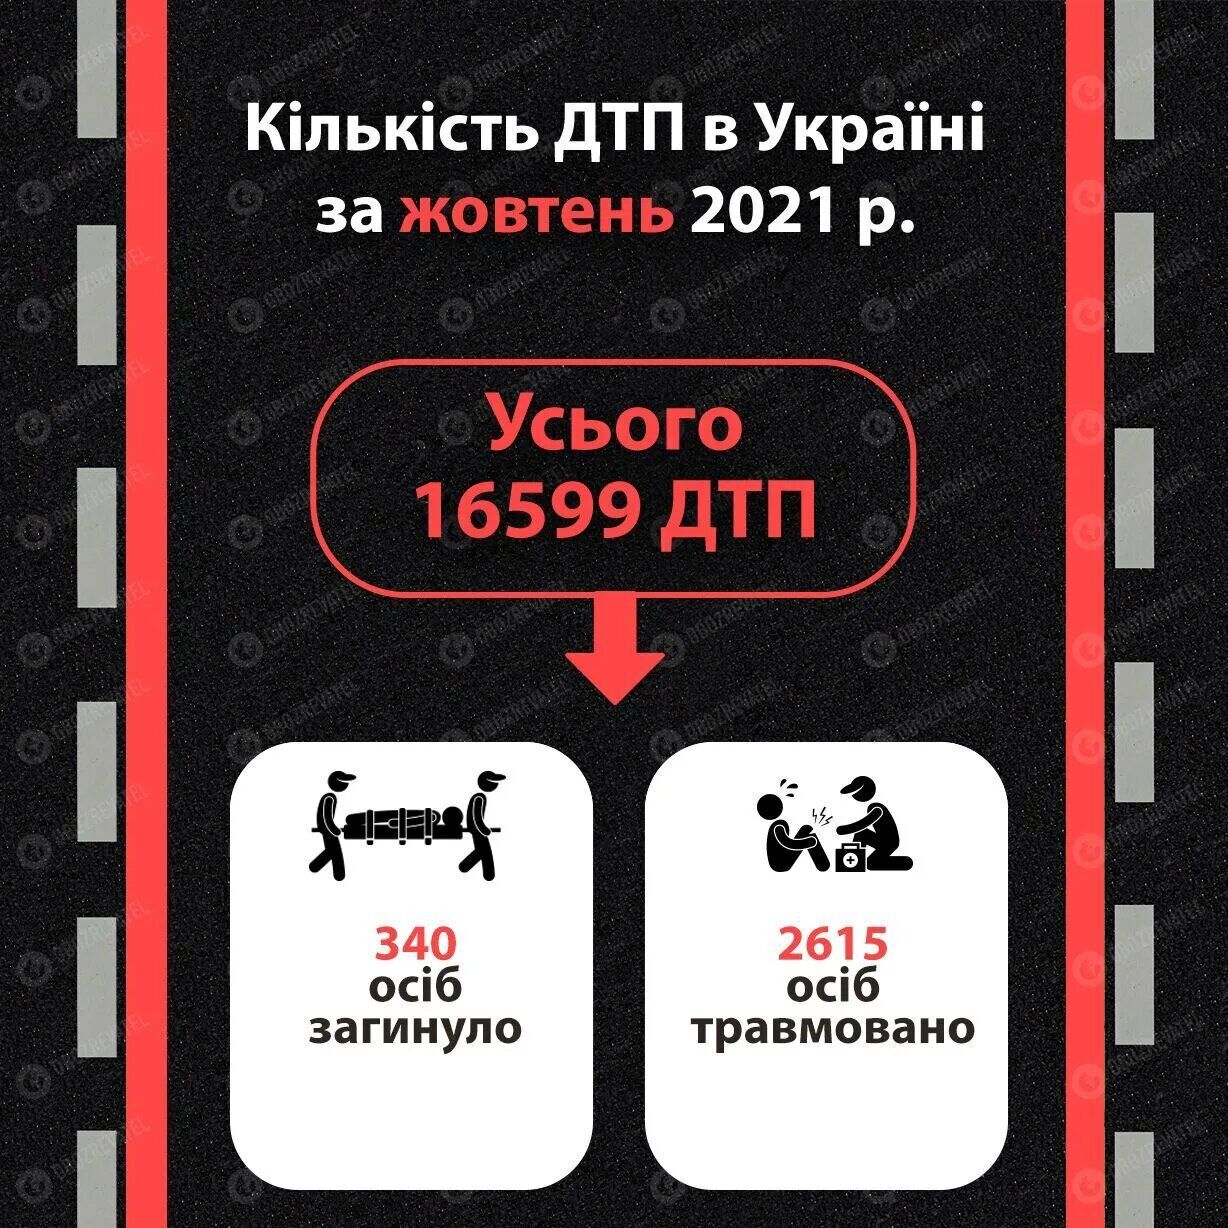 Статистика ДТП в Украине в октябре 2021